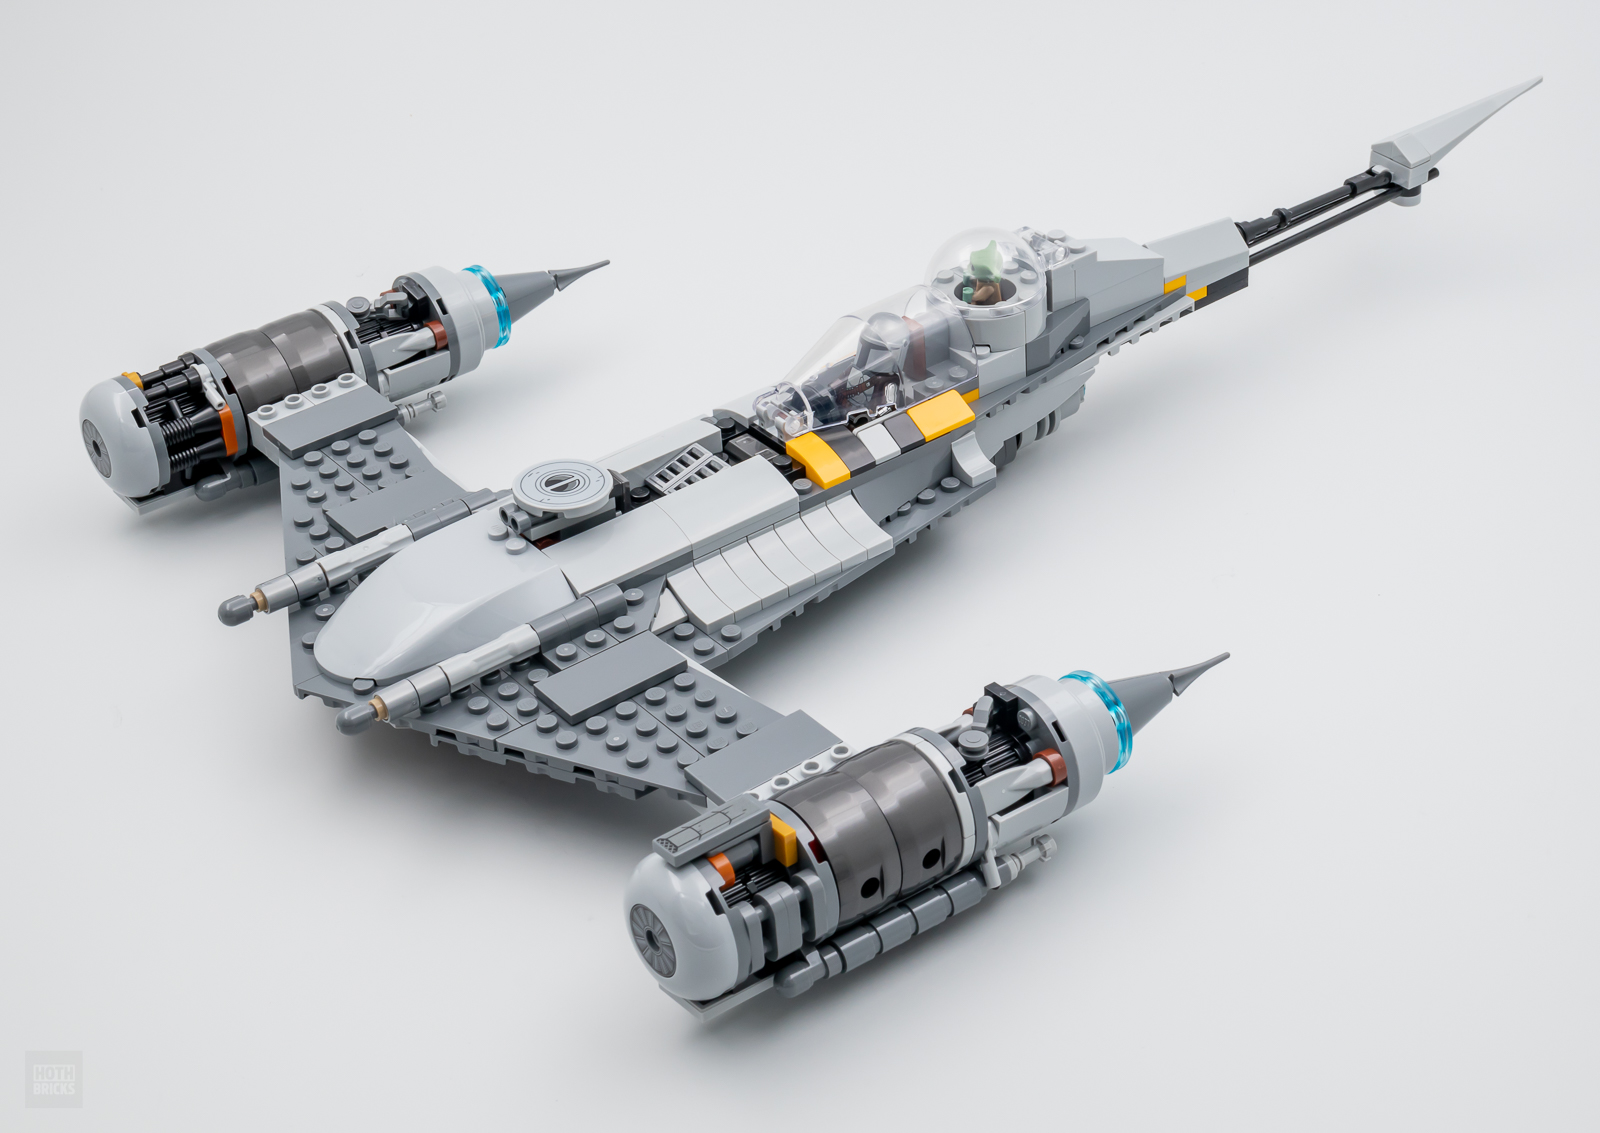 LEGO Star Wars 75325 Le chasseur N-1 du Mandalorien